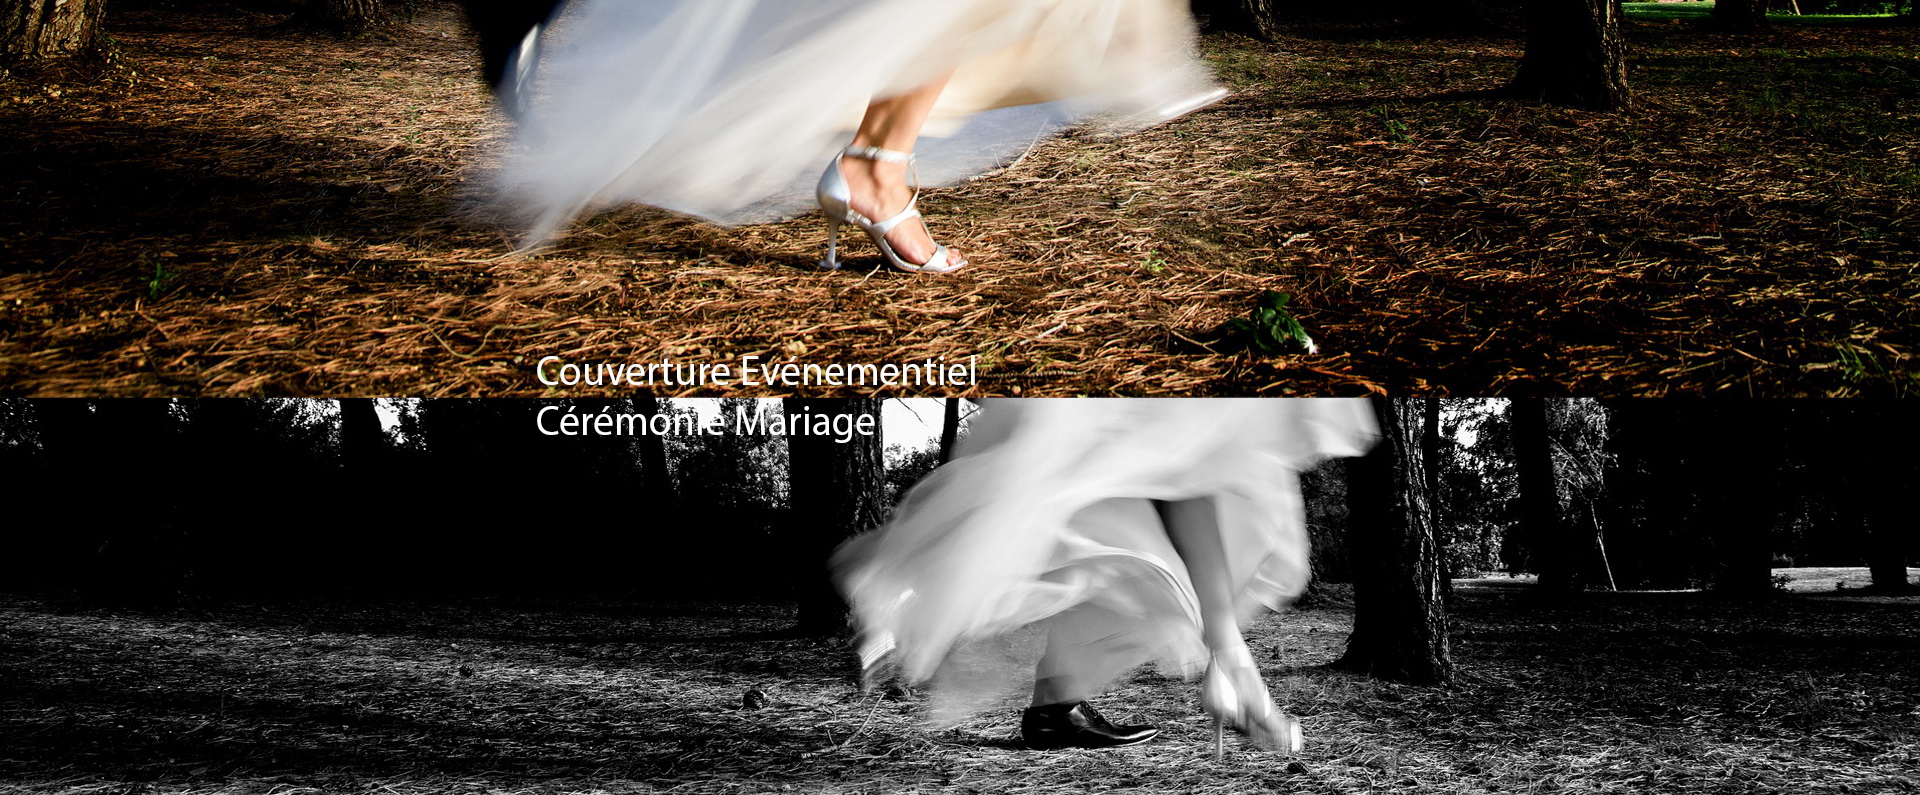 Photographies Cérémonies Mariages - Portraits - événementiels, Photographe professionnel David-Alexandre Vianey, couvre sous reportage, les différentes cérémonies de mariage.